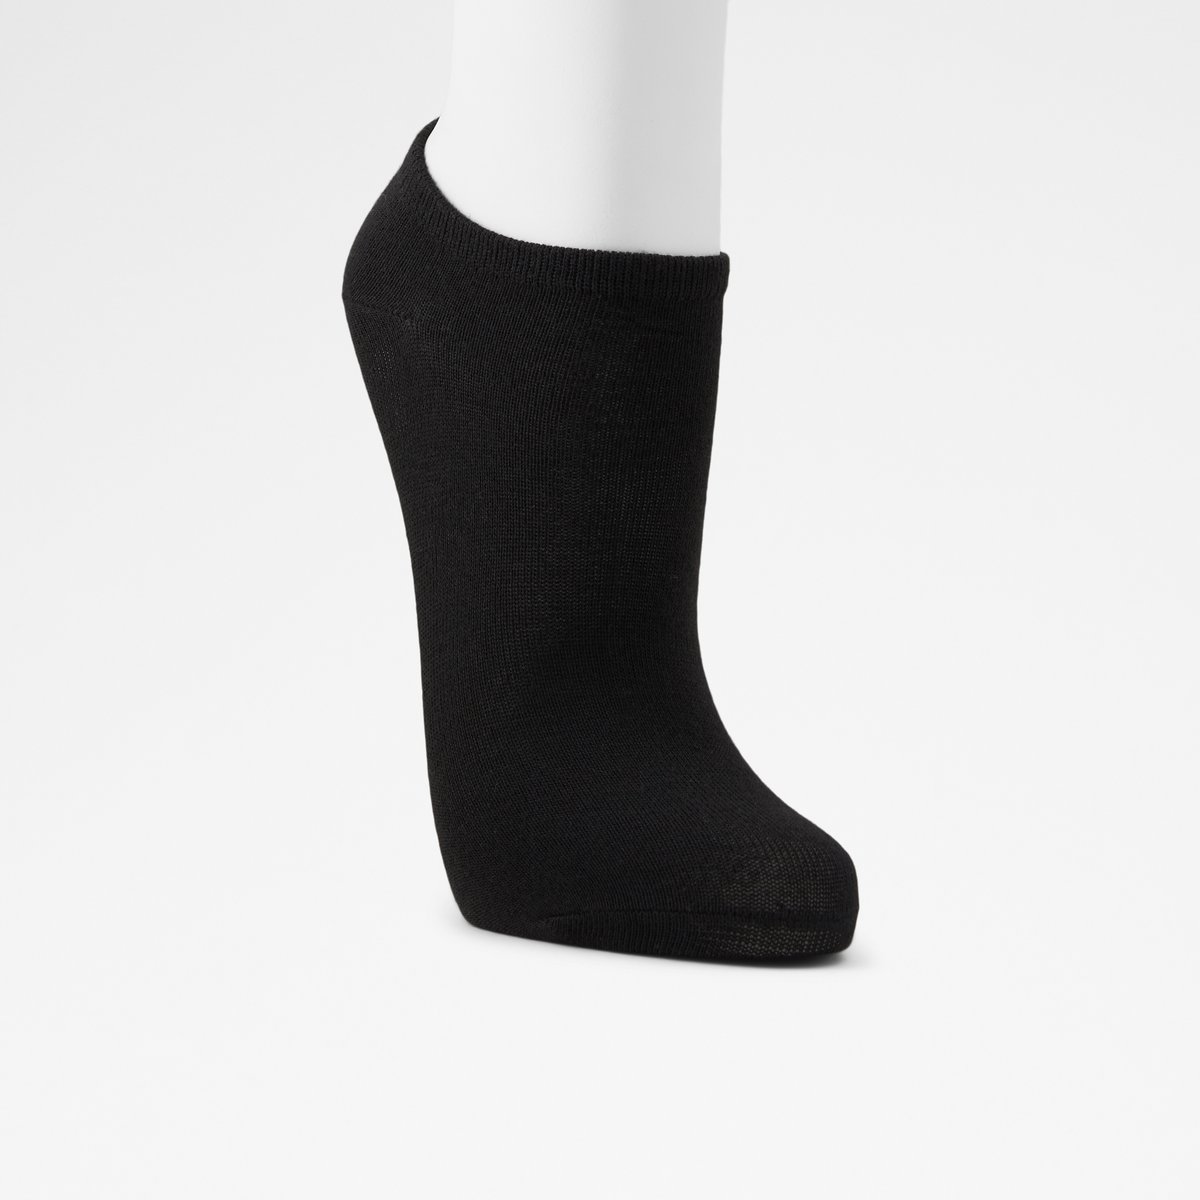 Albaennon Black Women's Socks | ALDO US